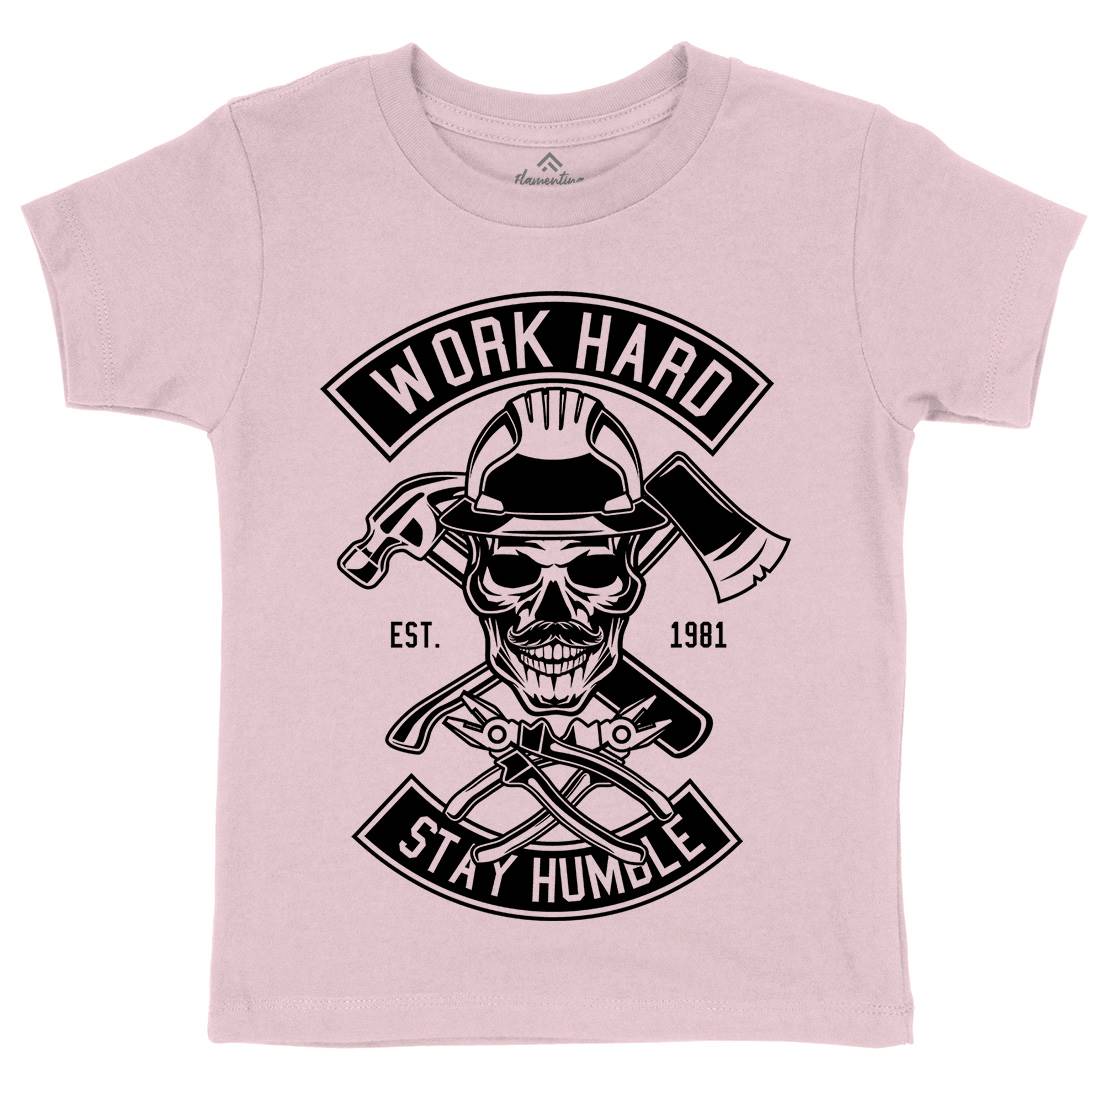 Work Hard Kids Organic Crew Neck T-Shirt Retro B673